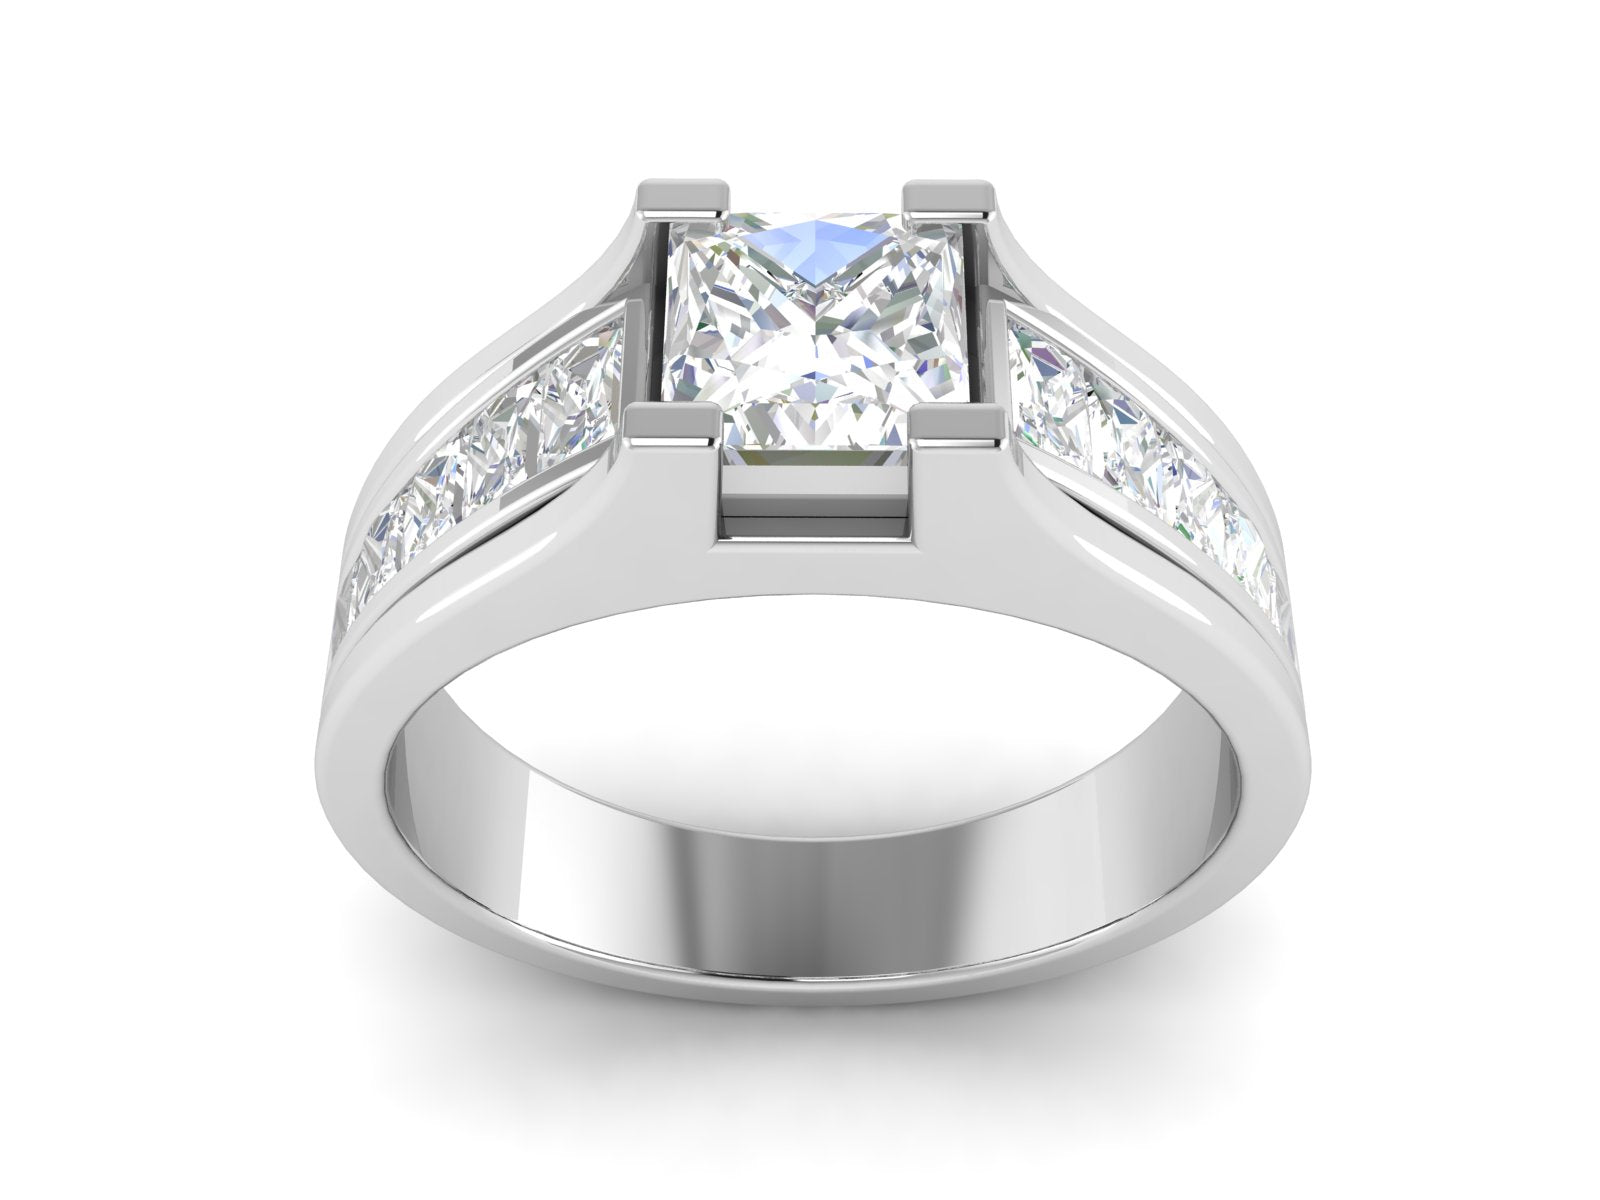 Buy Exquisite Diamond Men's Solitaire Ring Online | ORRA